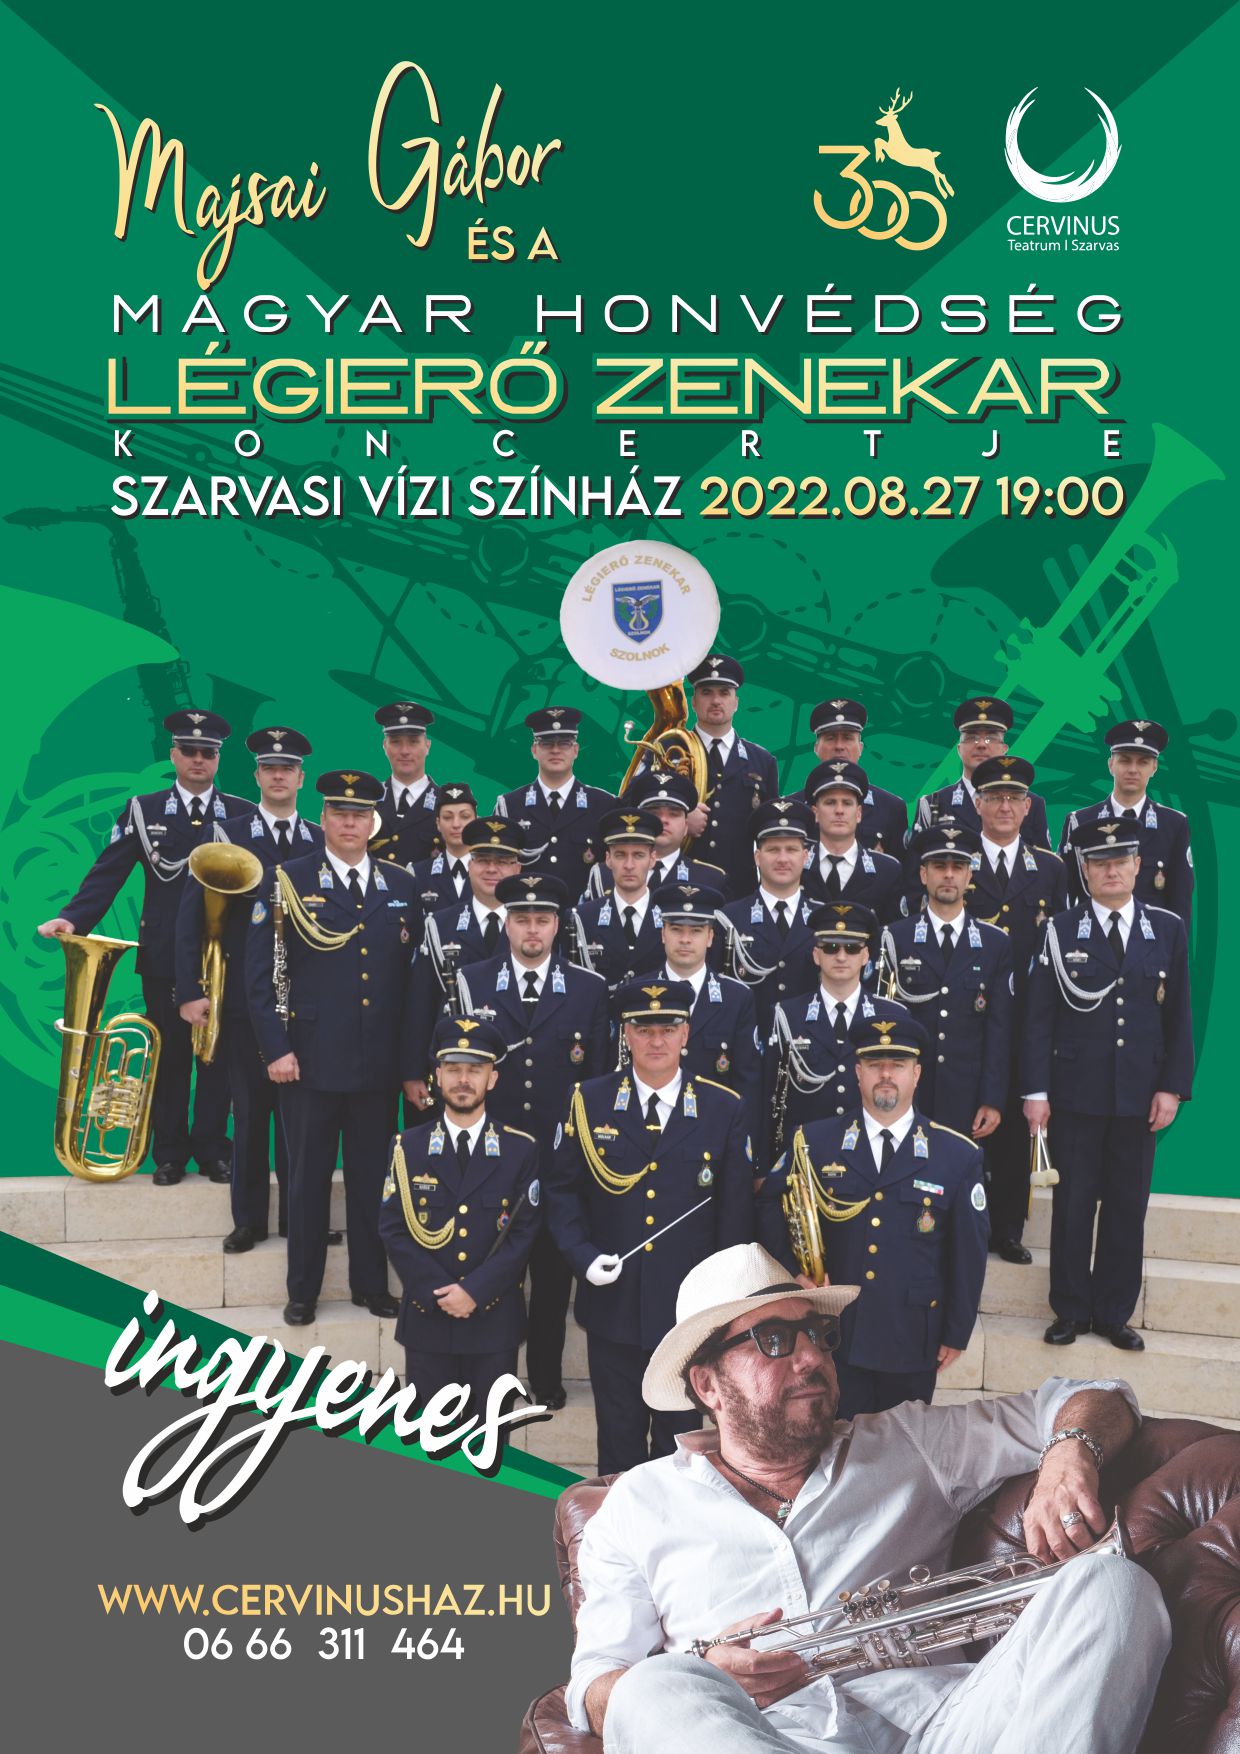 Majsai Gábor és a Magyar Honvédség Légierő Zenekar /Szolnok/ koncertje